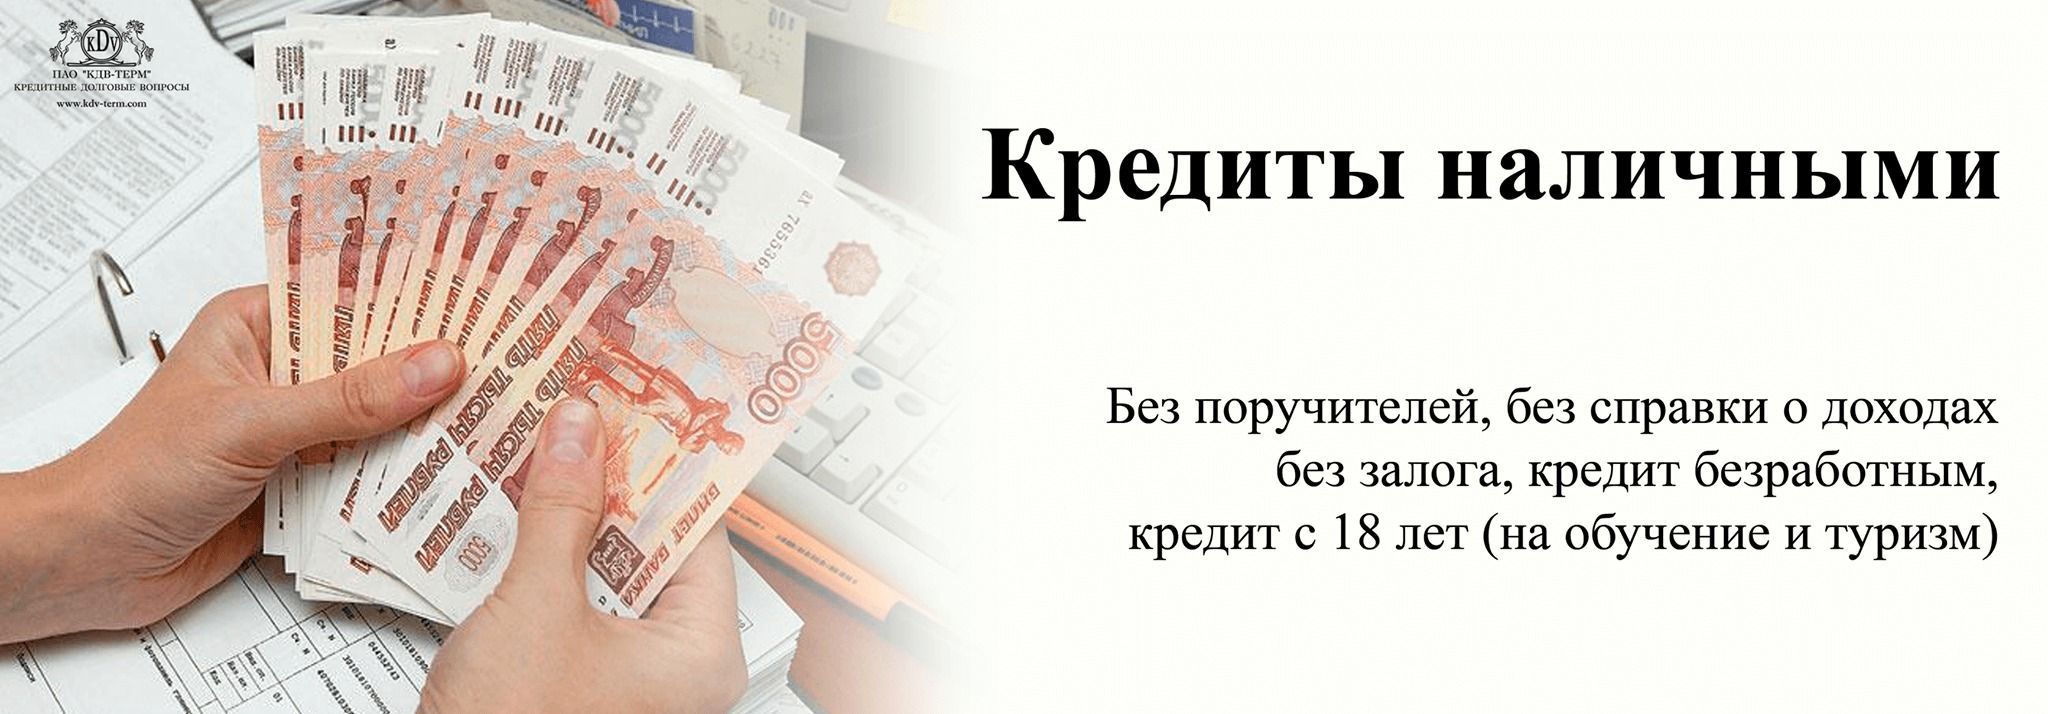 Кредиты без справок и поручителей в Беларуси - как получить